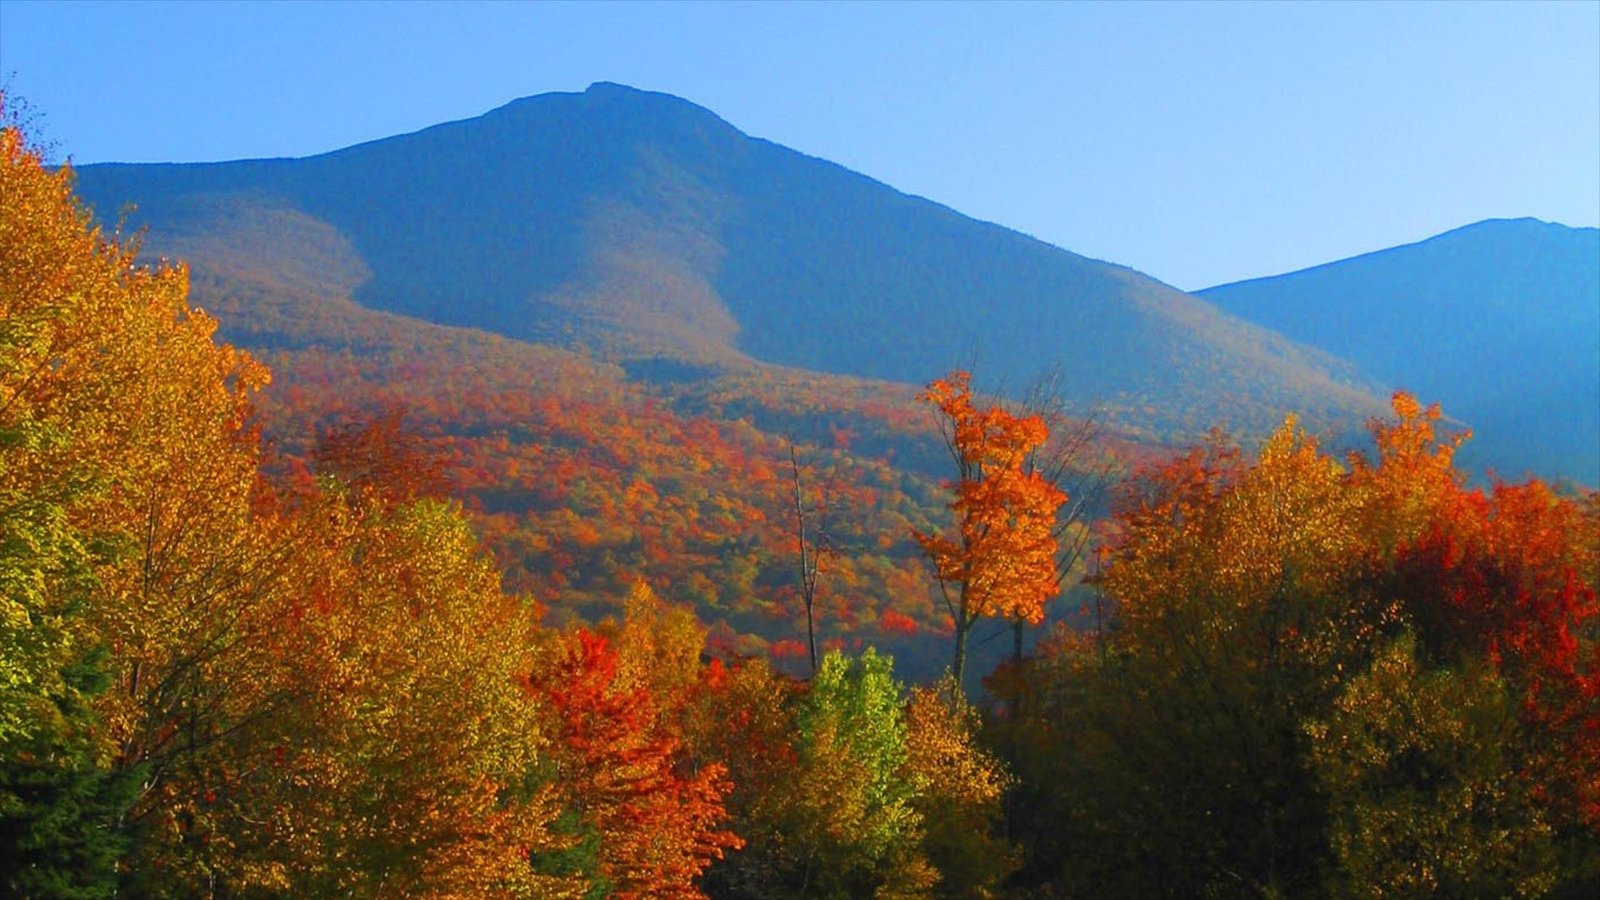 Best ideas about New Hampshire Landscape
. Save or Pin Landscape View of New Hampshire Now.